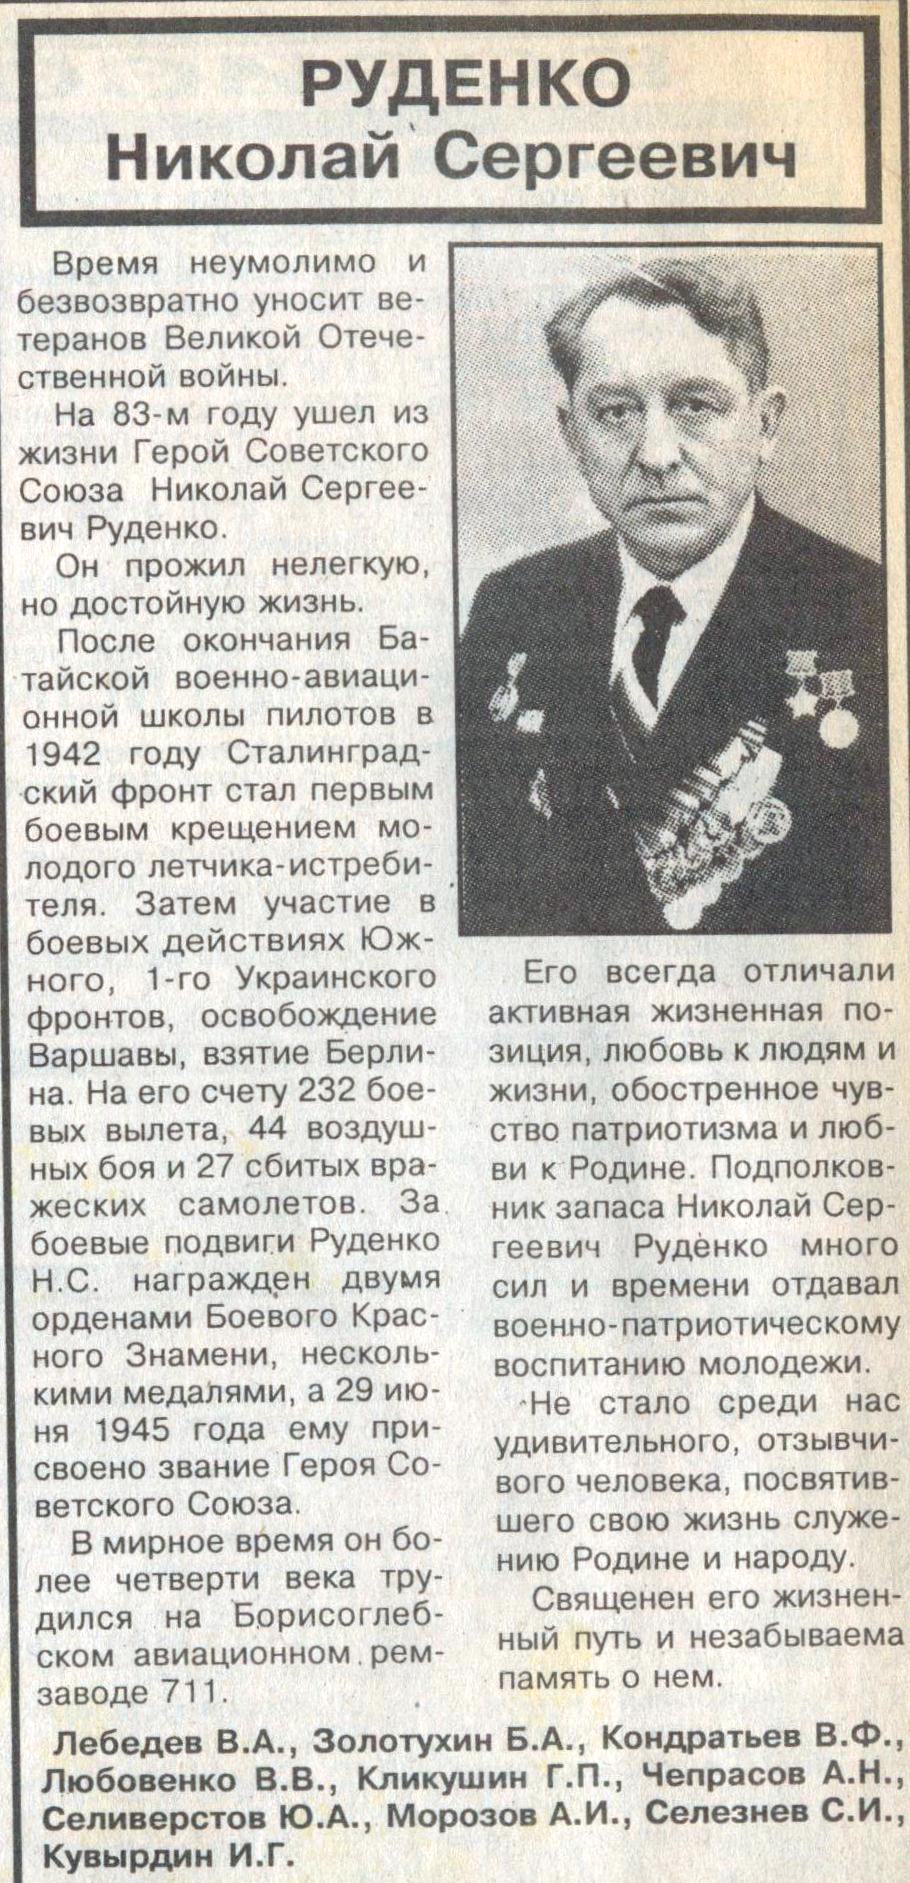 Некролог в газете Борисоглебский вестник от 20 марта 2003 года